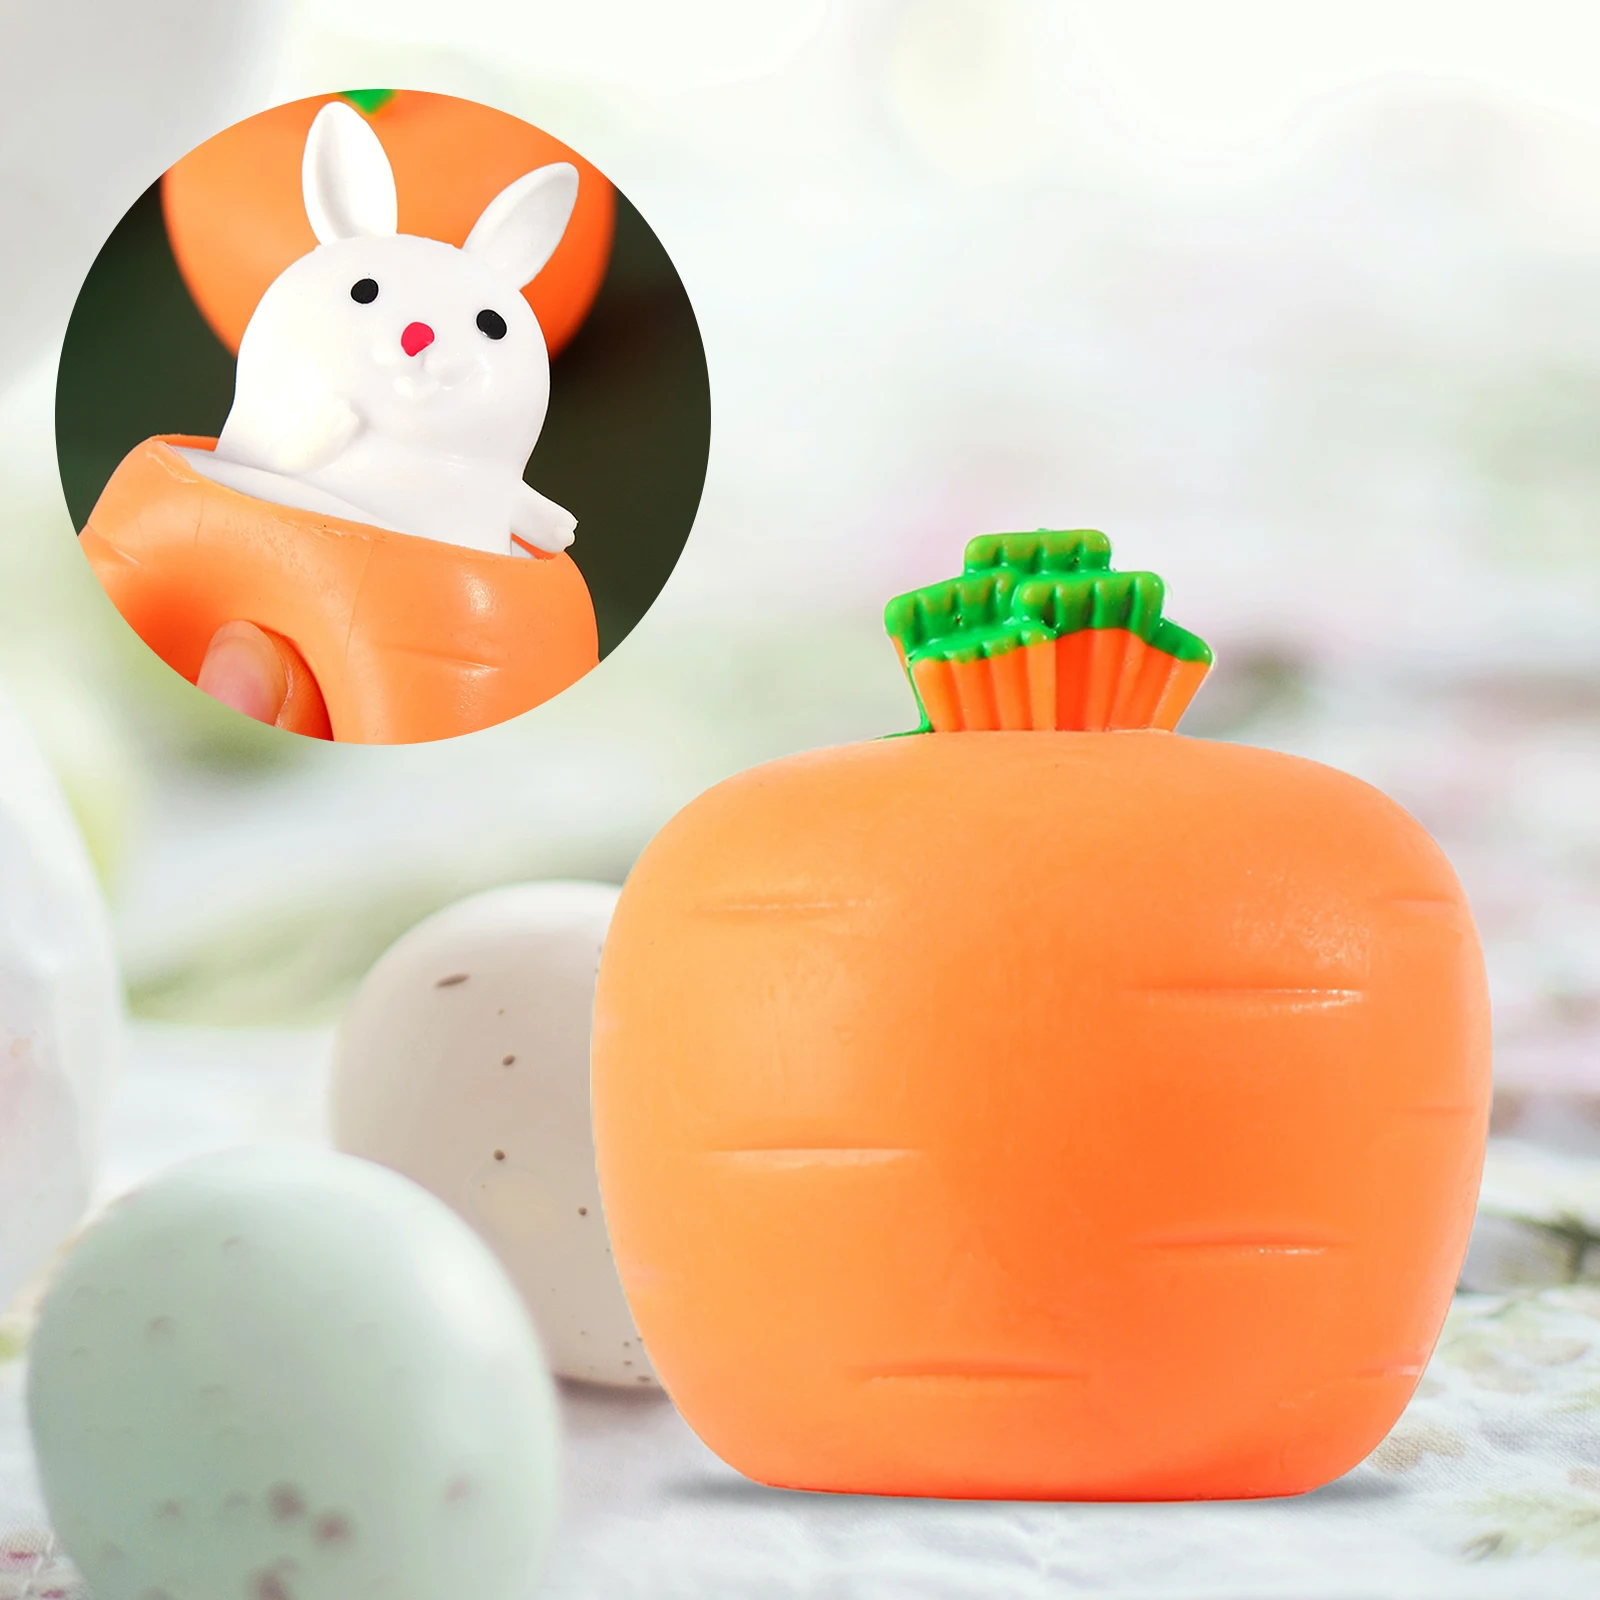 Śliczne marchew królik kształt zabawki typu Fidget śmieszne zabawki do ściskania dekompresja zabawki sensoryczne nuda zabawki antystresowe dla dzieci dorosłych